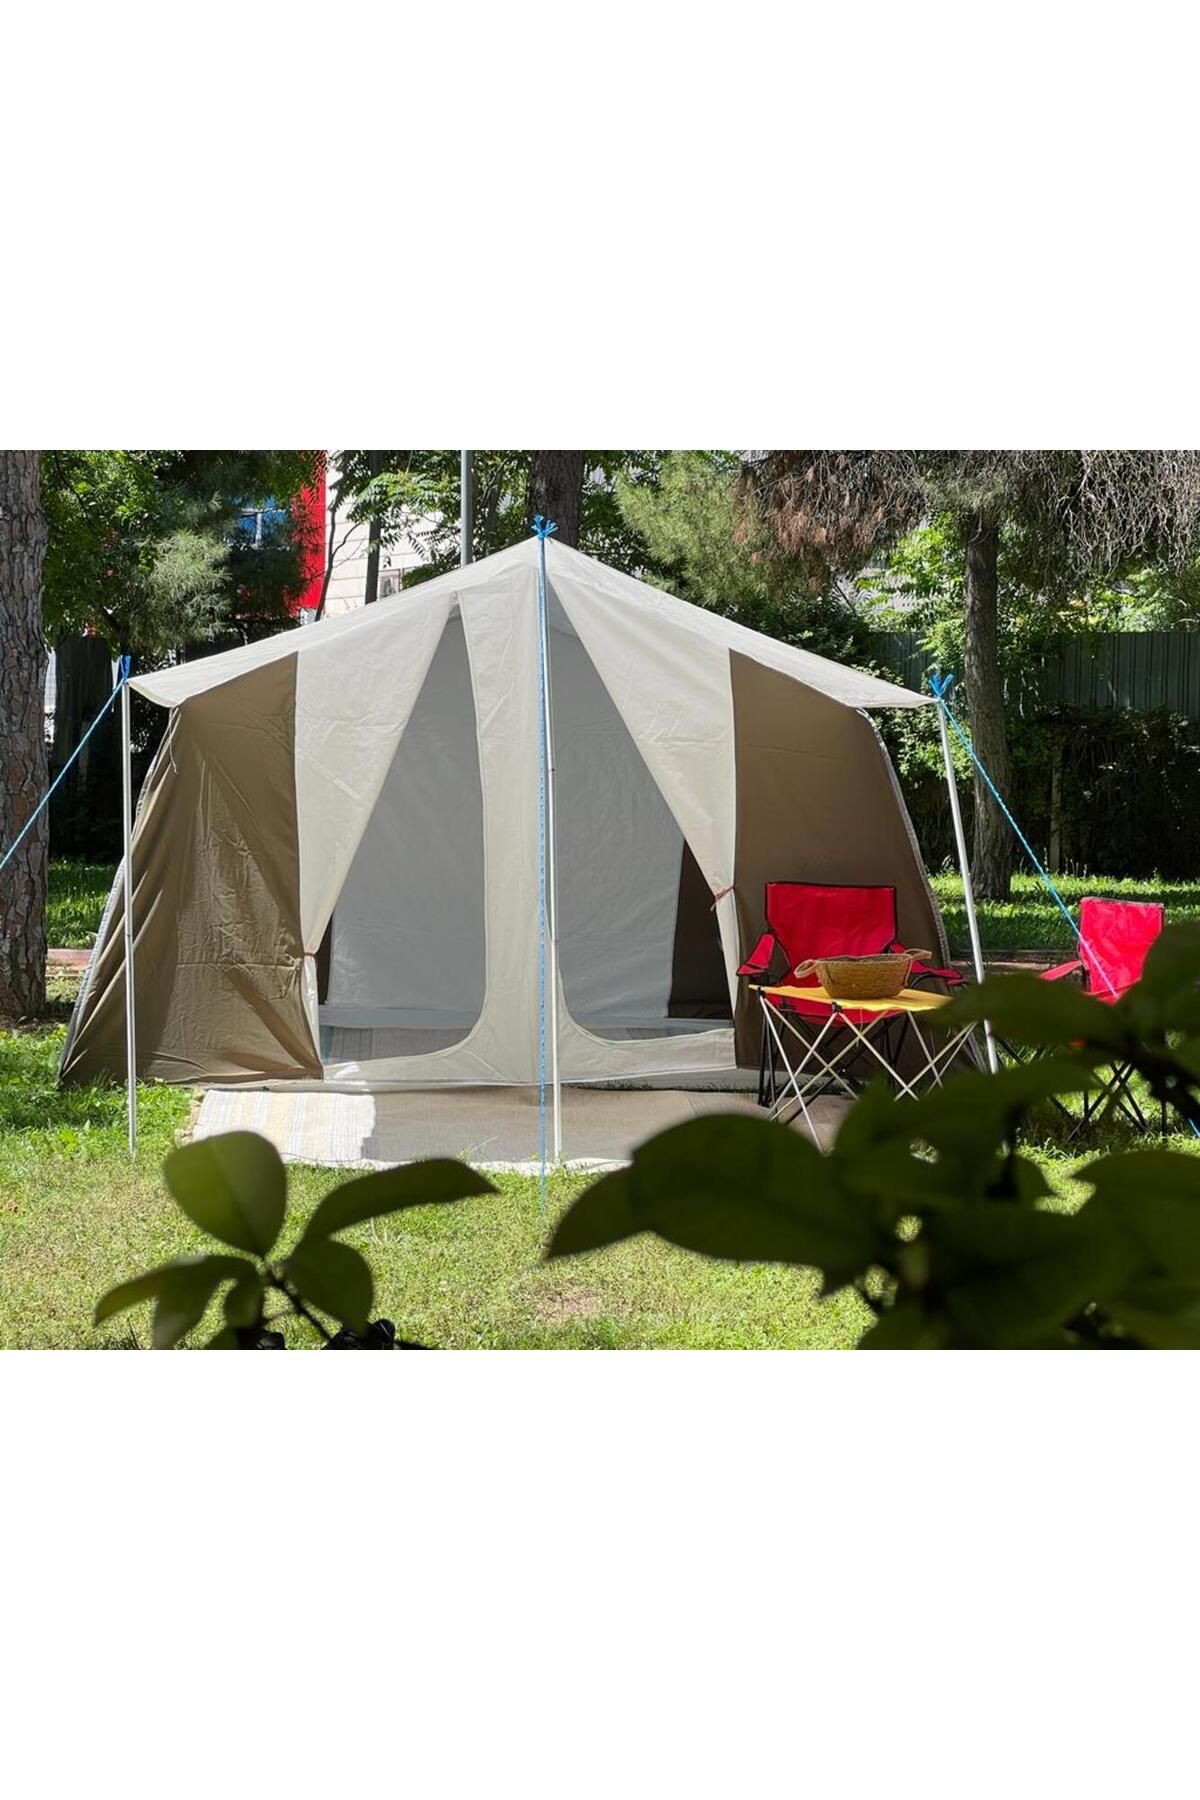 yamaç çadır Baca Çıkışlı Gri Renkte Ara Bölme Dahil Kapıda Pencerede Sineklikli Kaliteli Kamp Çadırı